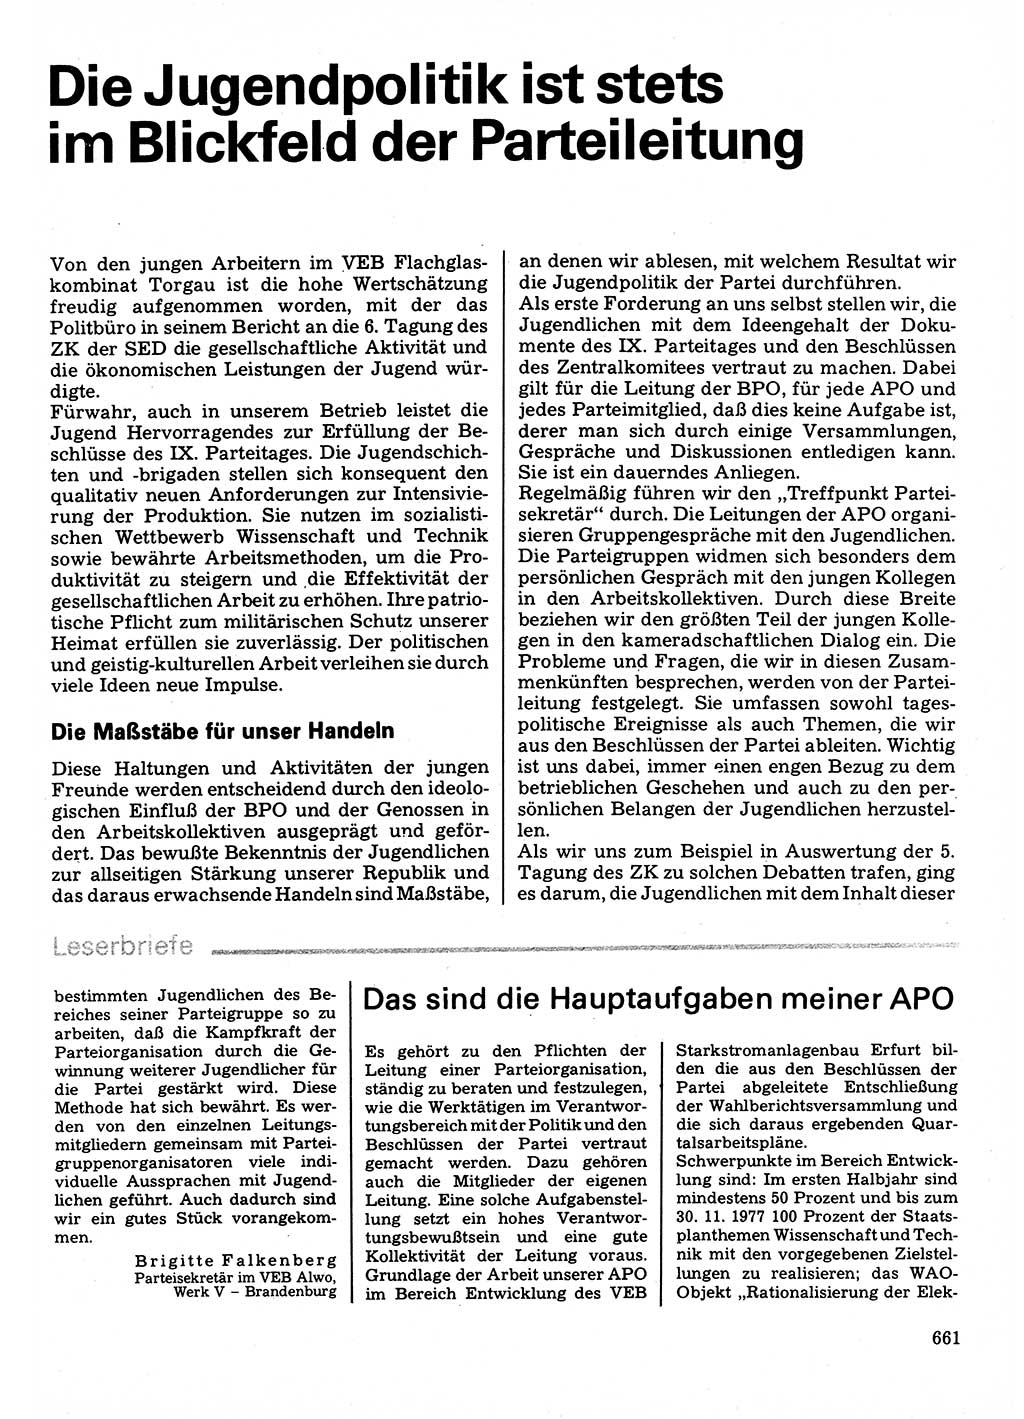 Neuer Weg (NW), Organ des Zentralkomitees (ZK) der SED (Sozialistische Einheitspartei Deutschlands) für Fragen des Parteilebens, 32. Jahrgang [Deutsche Demokratische Republik (DDR)] 1977, Seite 661 (NW ZK SED DDR 1977, S. 661)